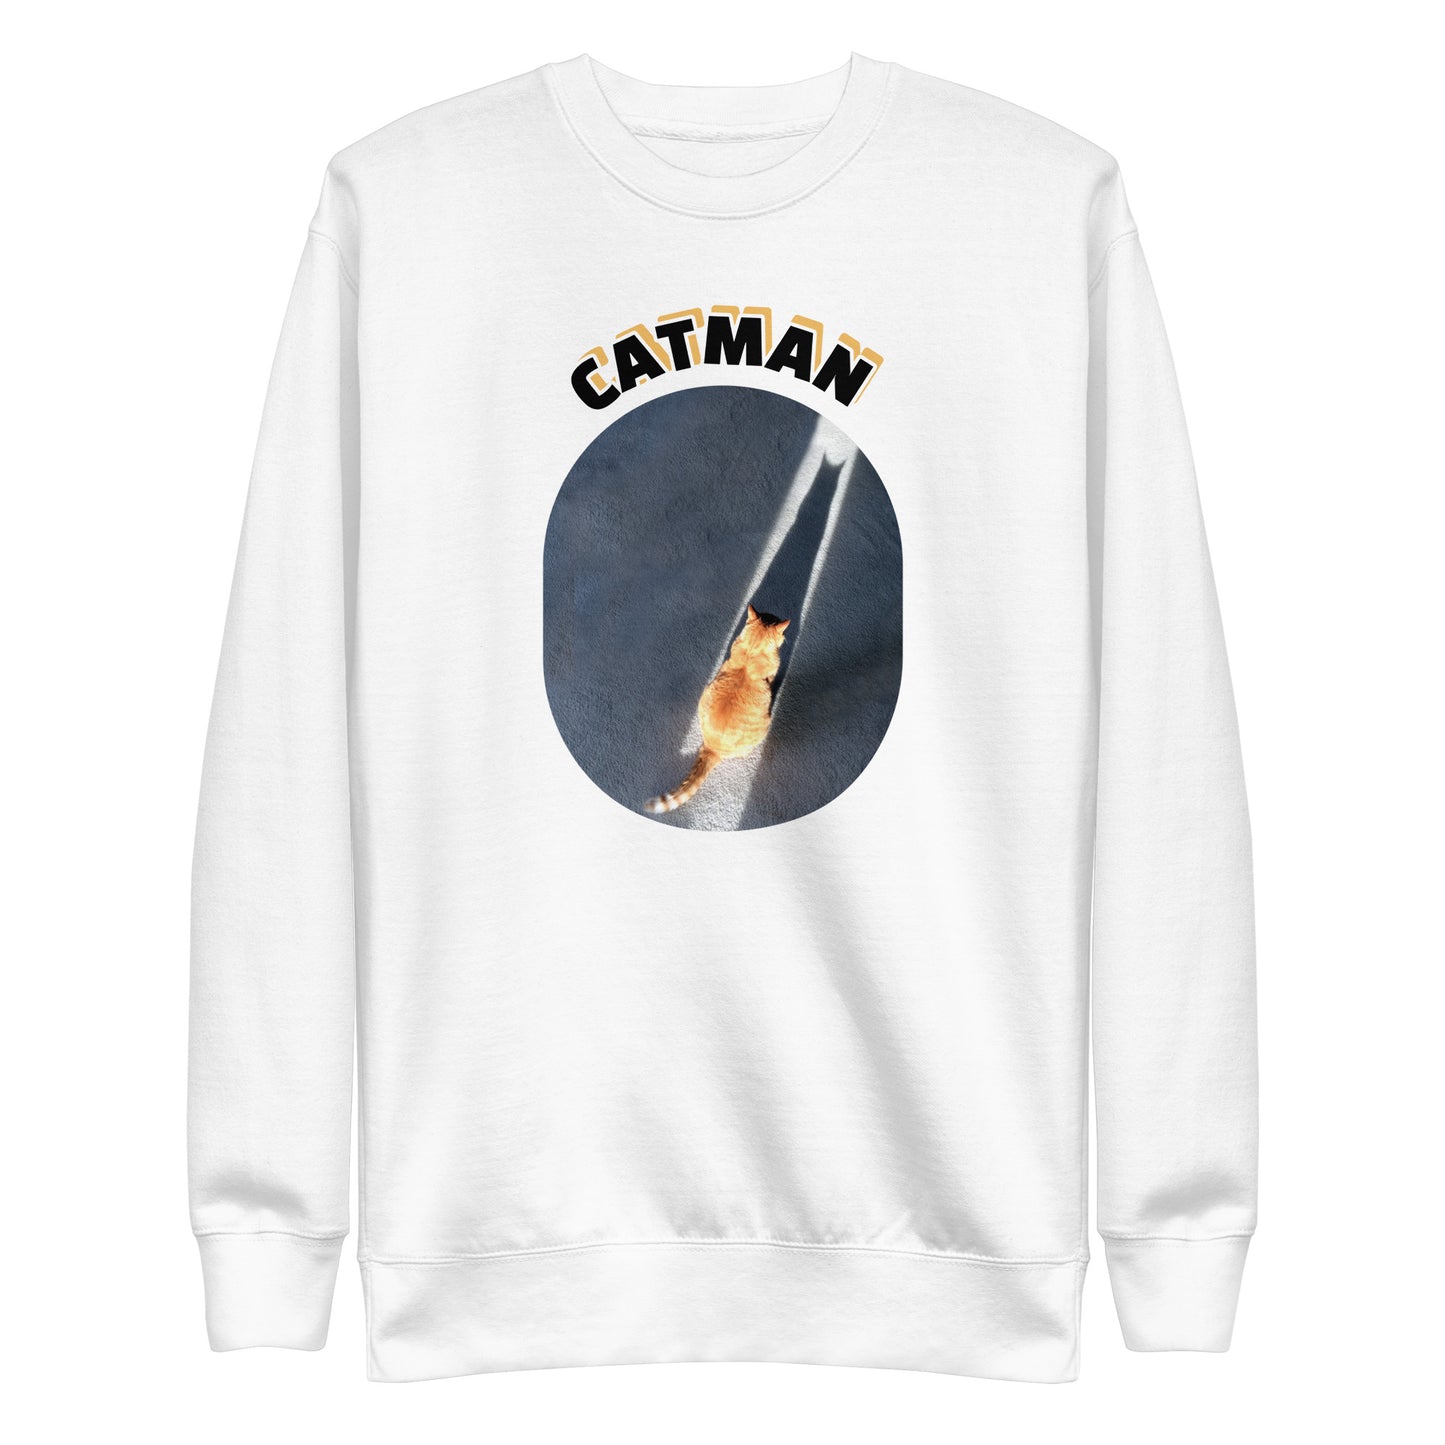 The Catman Premium Sweatshirt